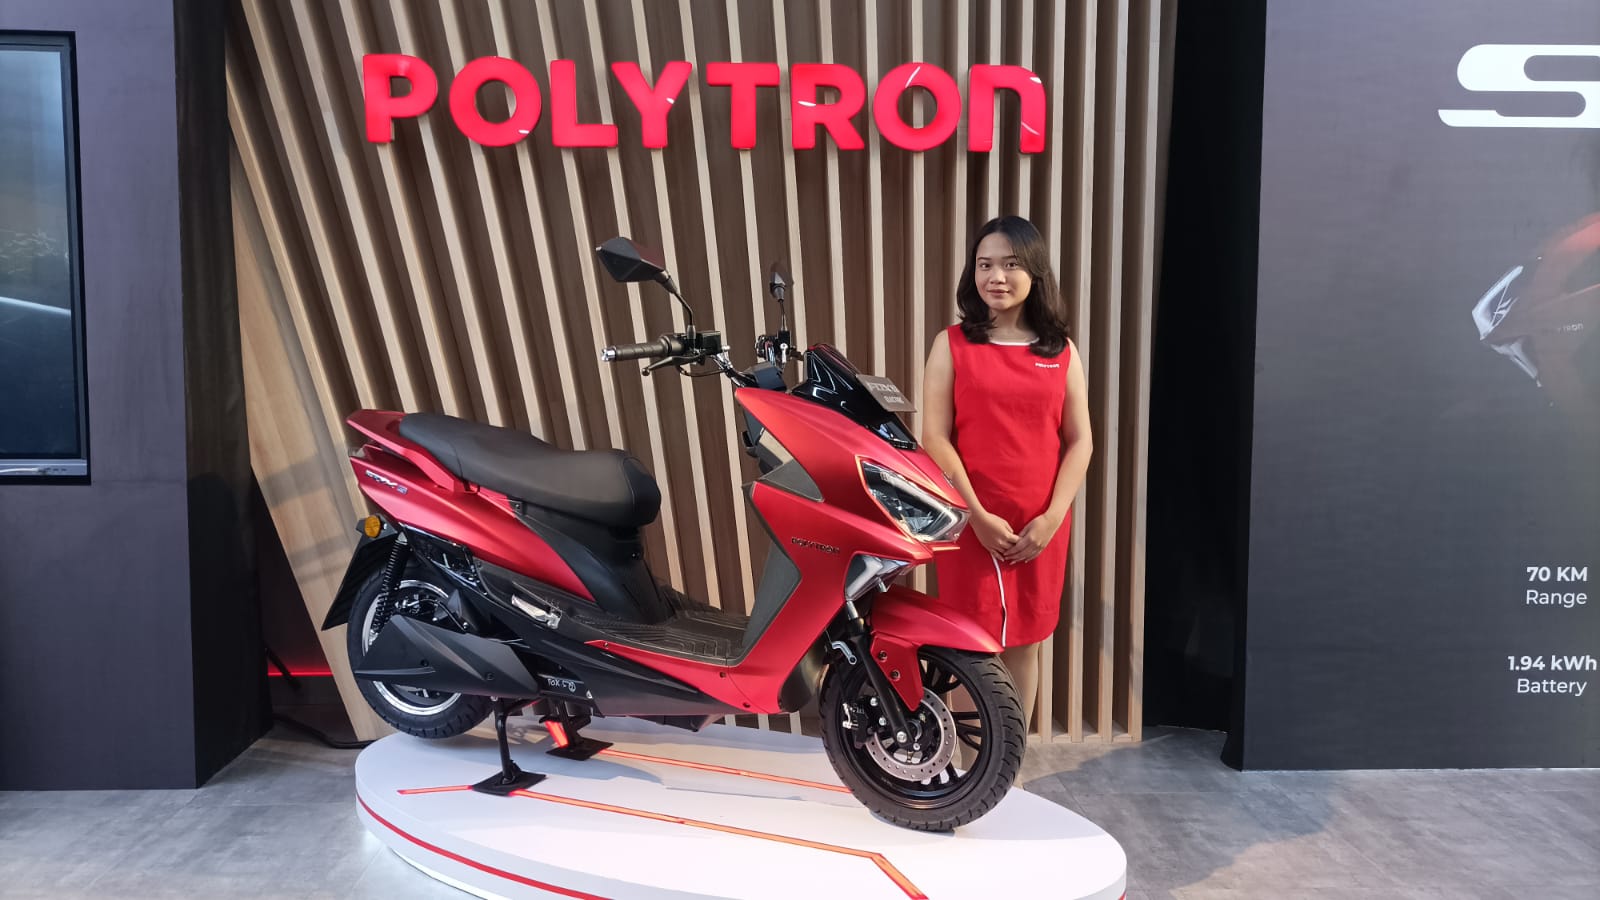 Polytron Buka Showroom Baru di PIK 2 Jakarta dengan Fasilitas Lengkap